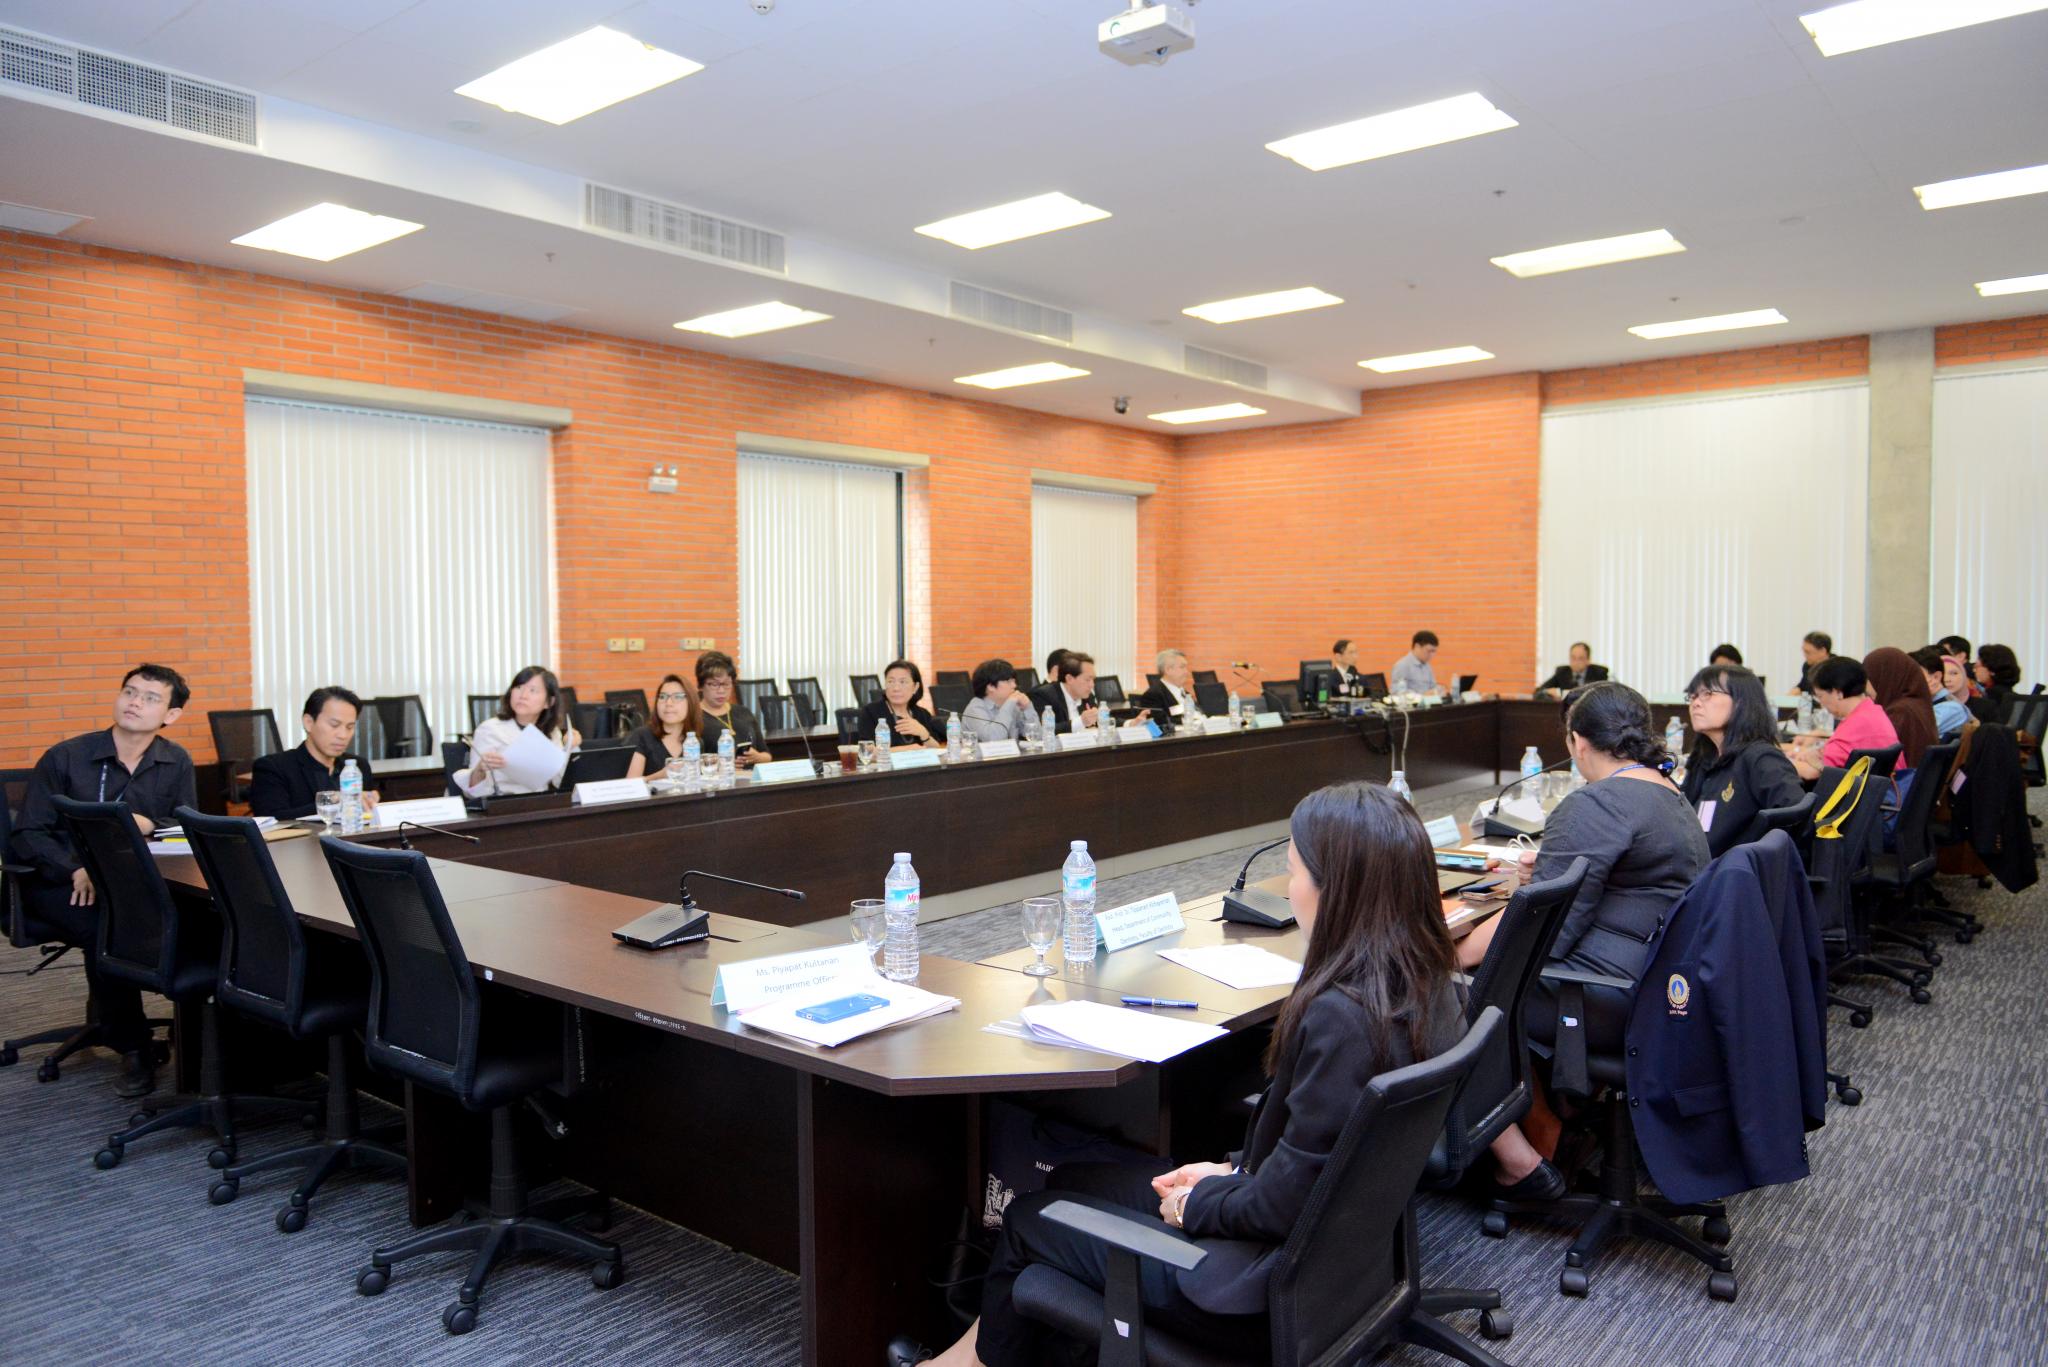 การประชุมคณะกรรมการที่ปรึกษานานาชาติของมหาวิทยาลัยมหิดลในเครือข่ายมหาวิทยาลั